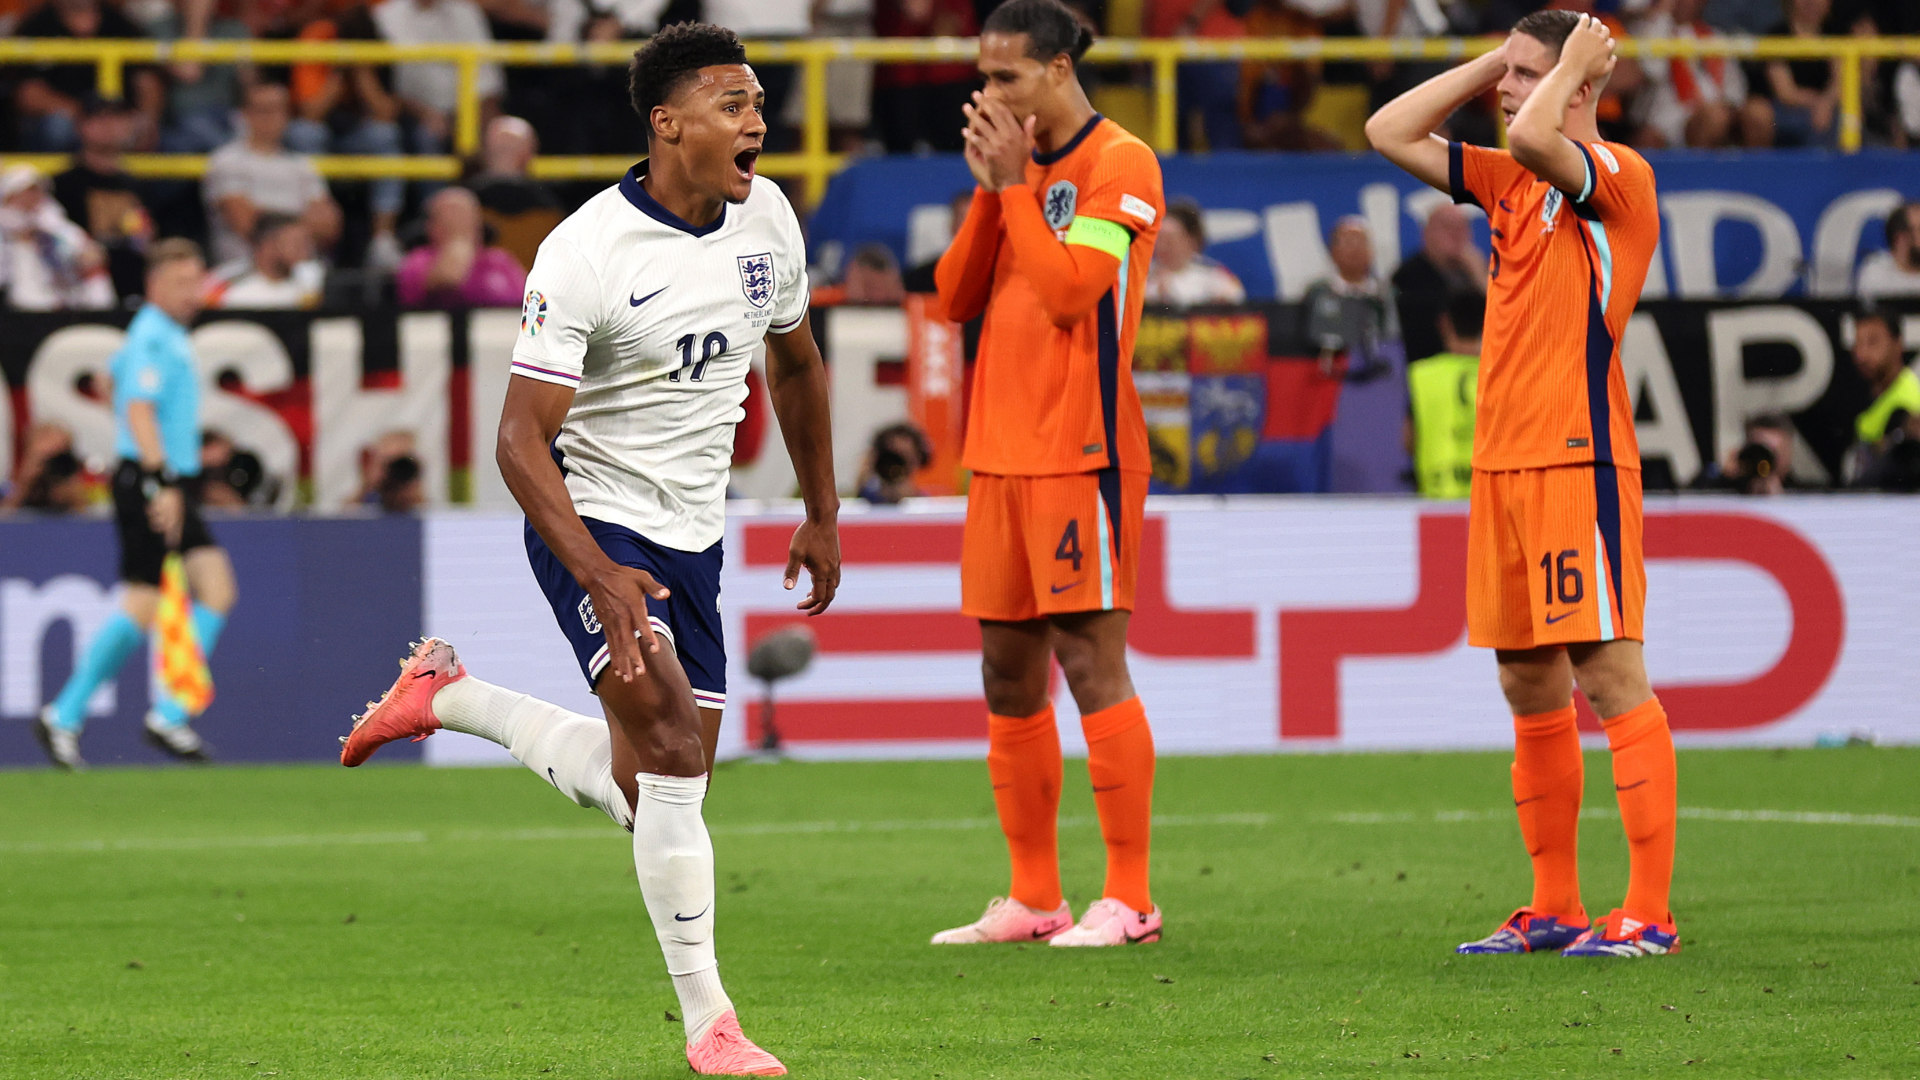 “Jadi Tim Kok Jelek Banget” – Inggris Dikecam Legenda Belanda Setelah Kemenangan Kontroversial Di Euro 2024